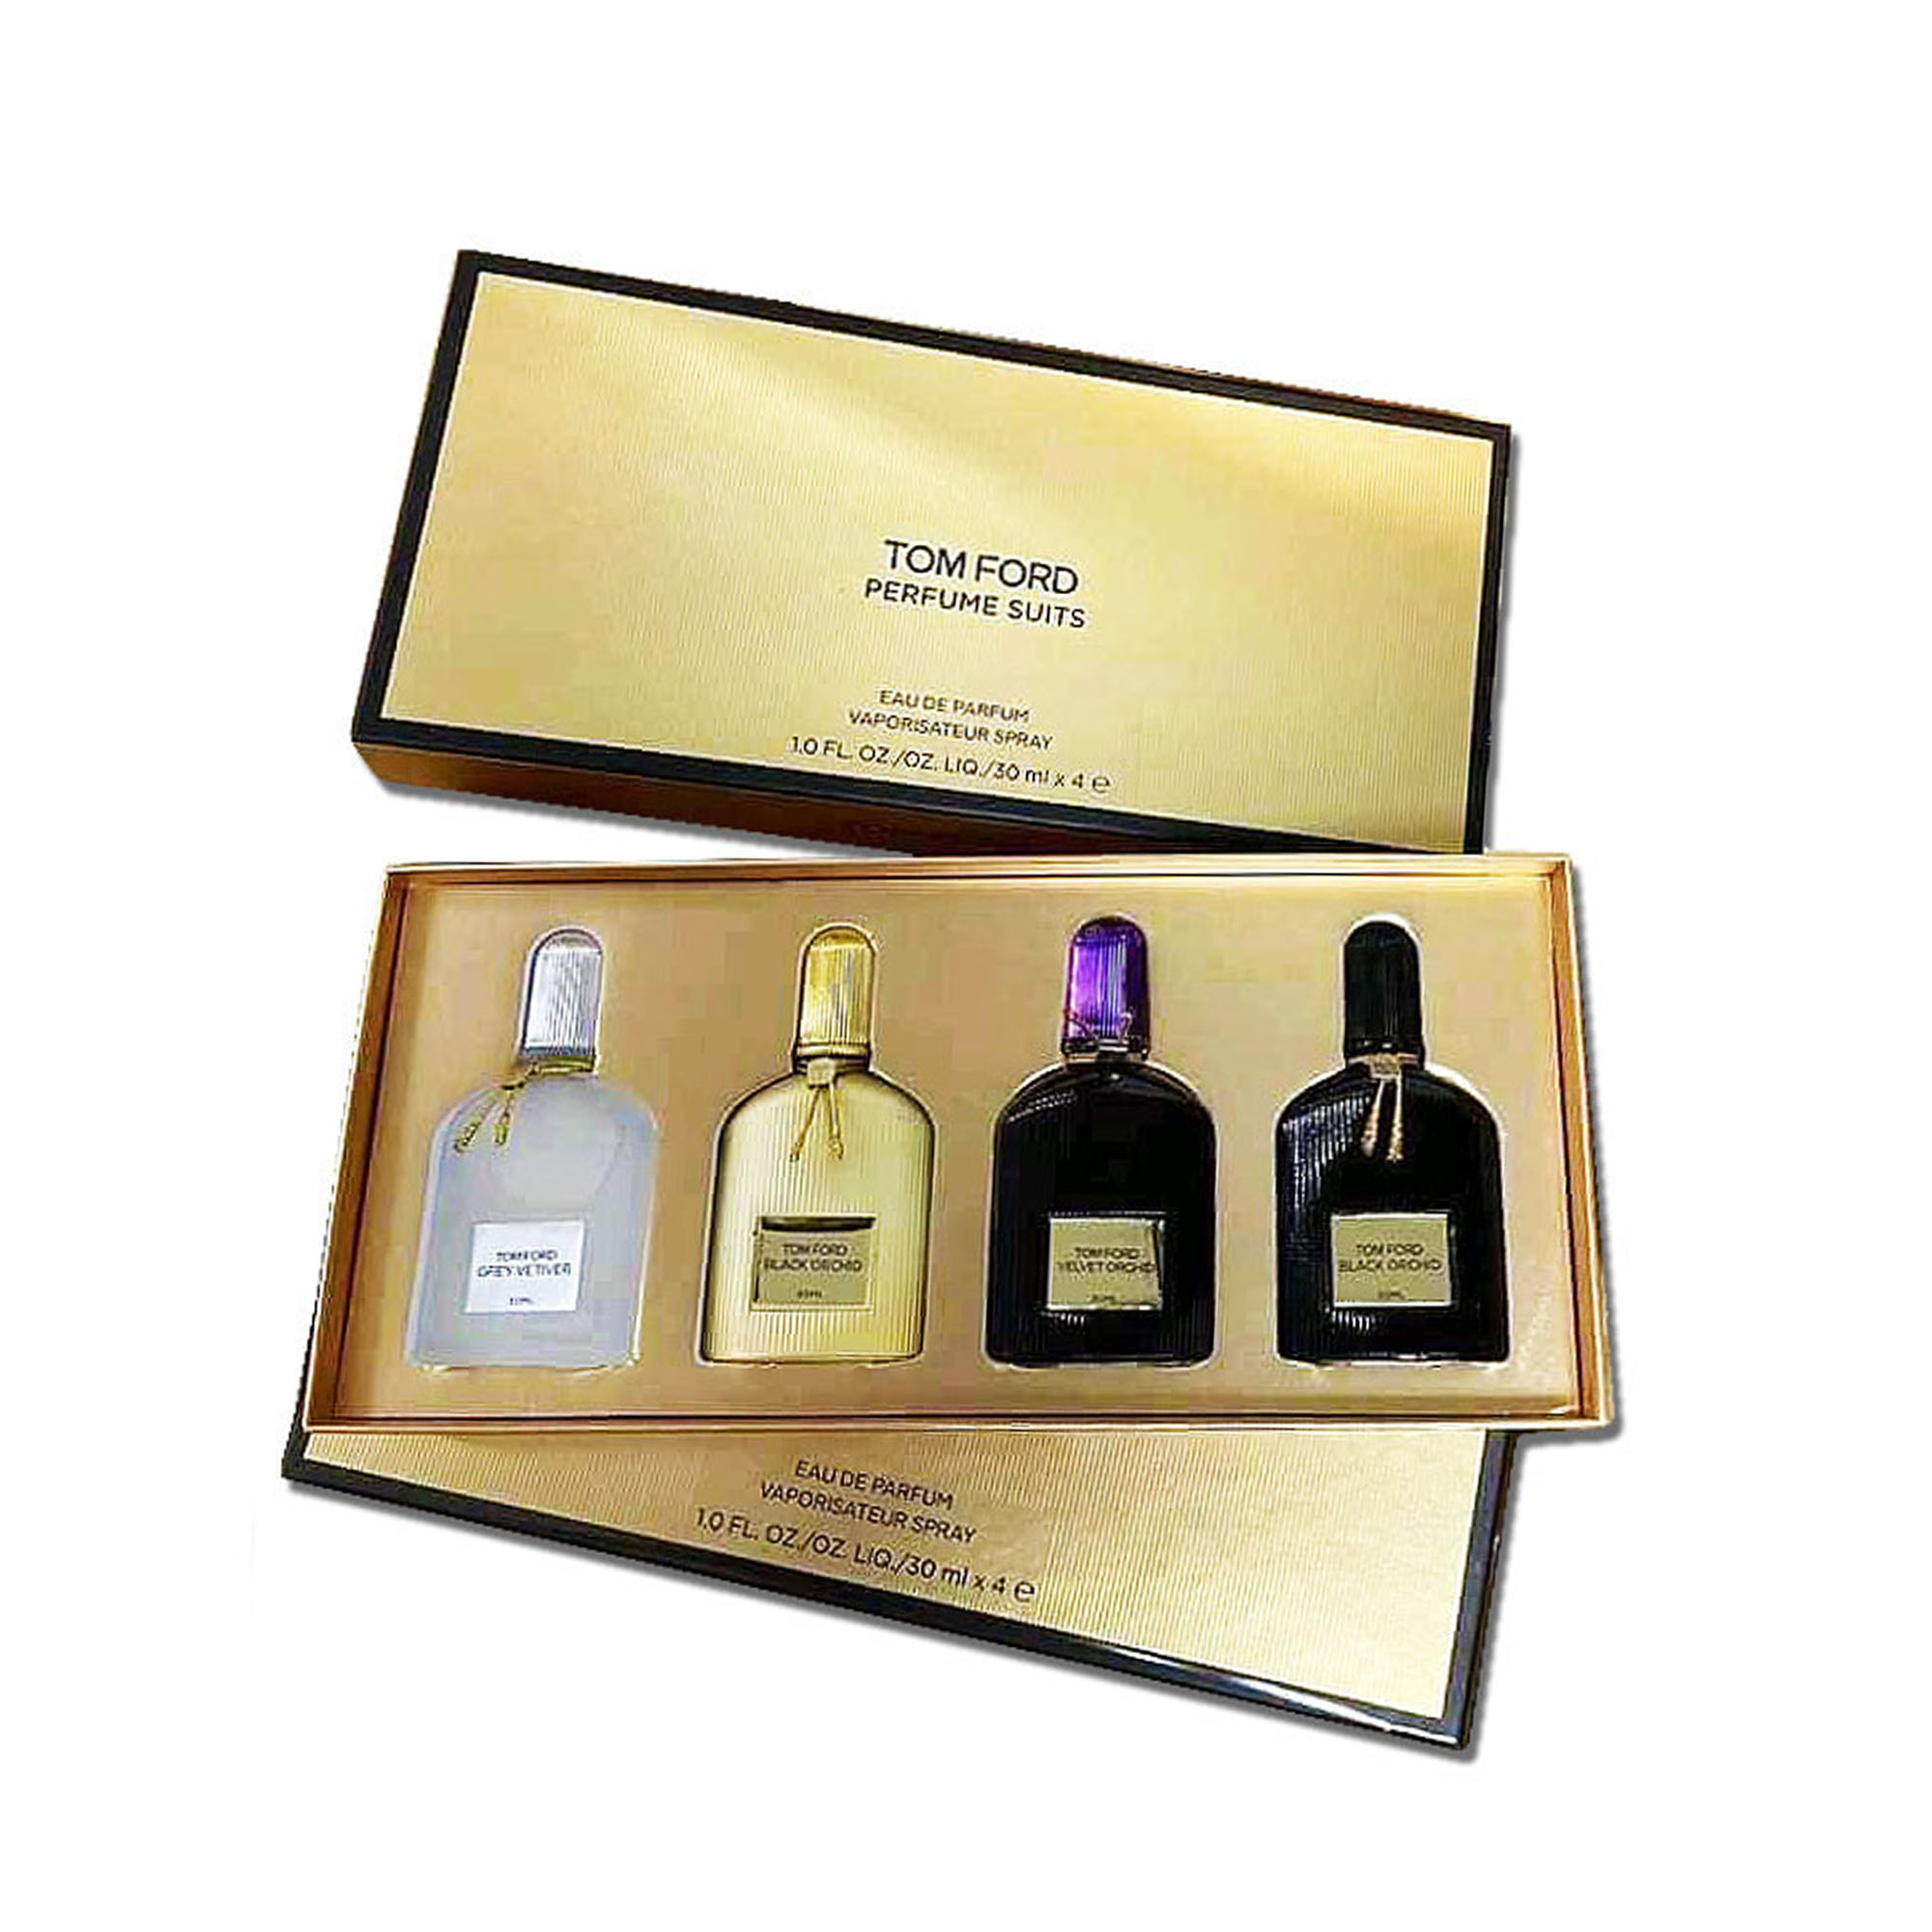 Acheter des parfums pour hommes Tom Ford en ligne | lazada.com.ph